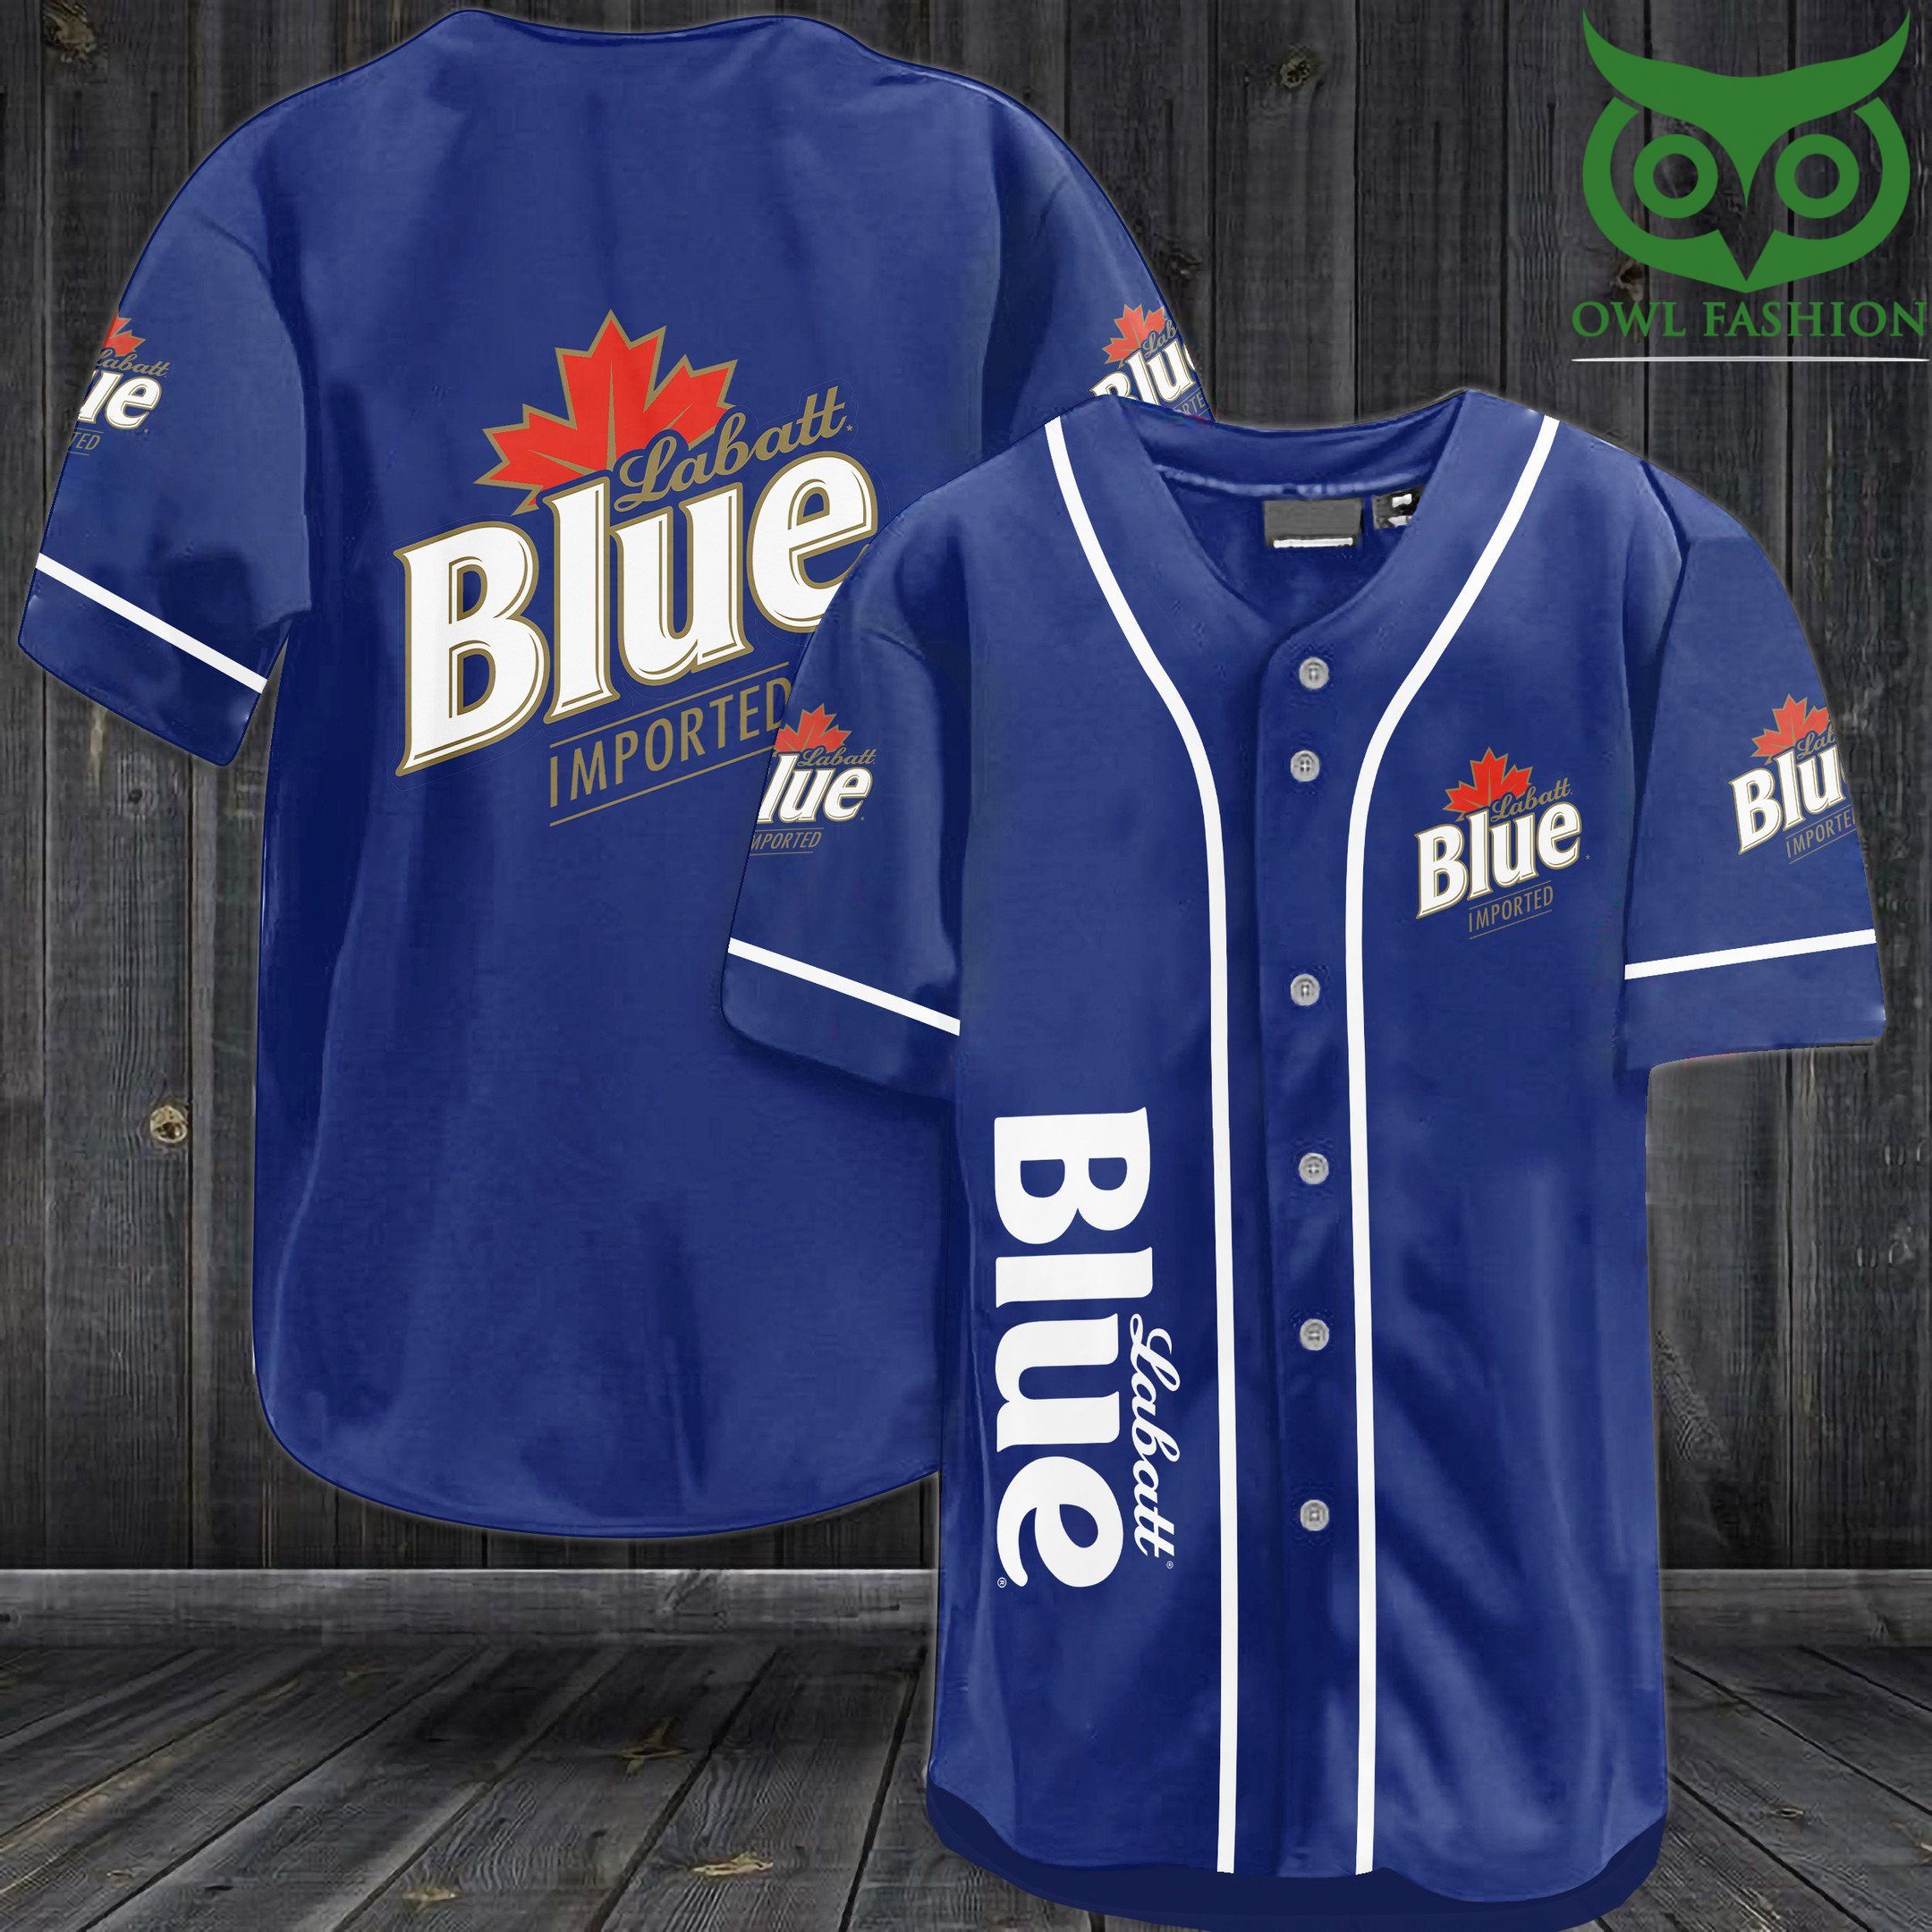 Labatt Blue imporetd Baseball Jersey Shirt 